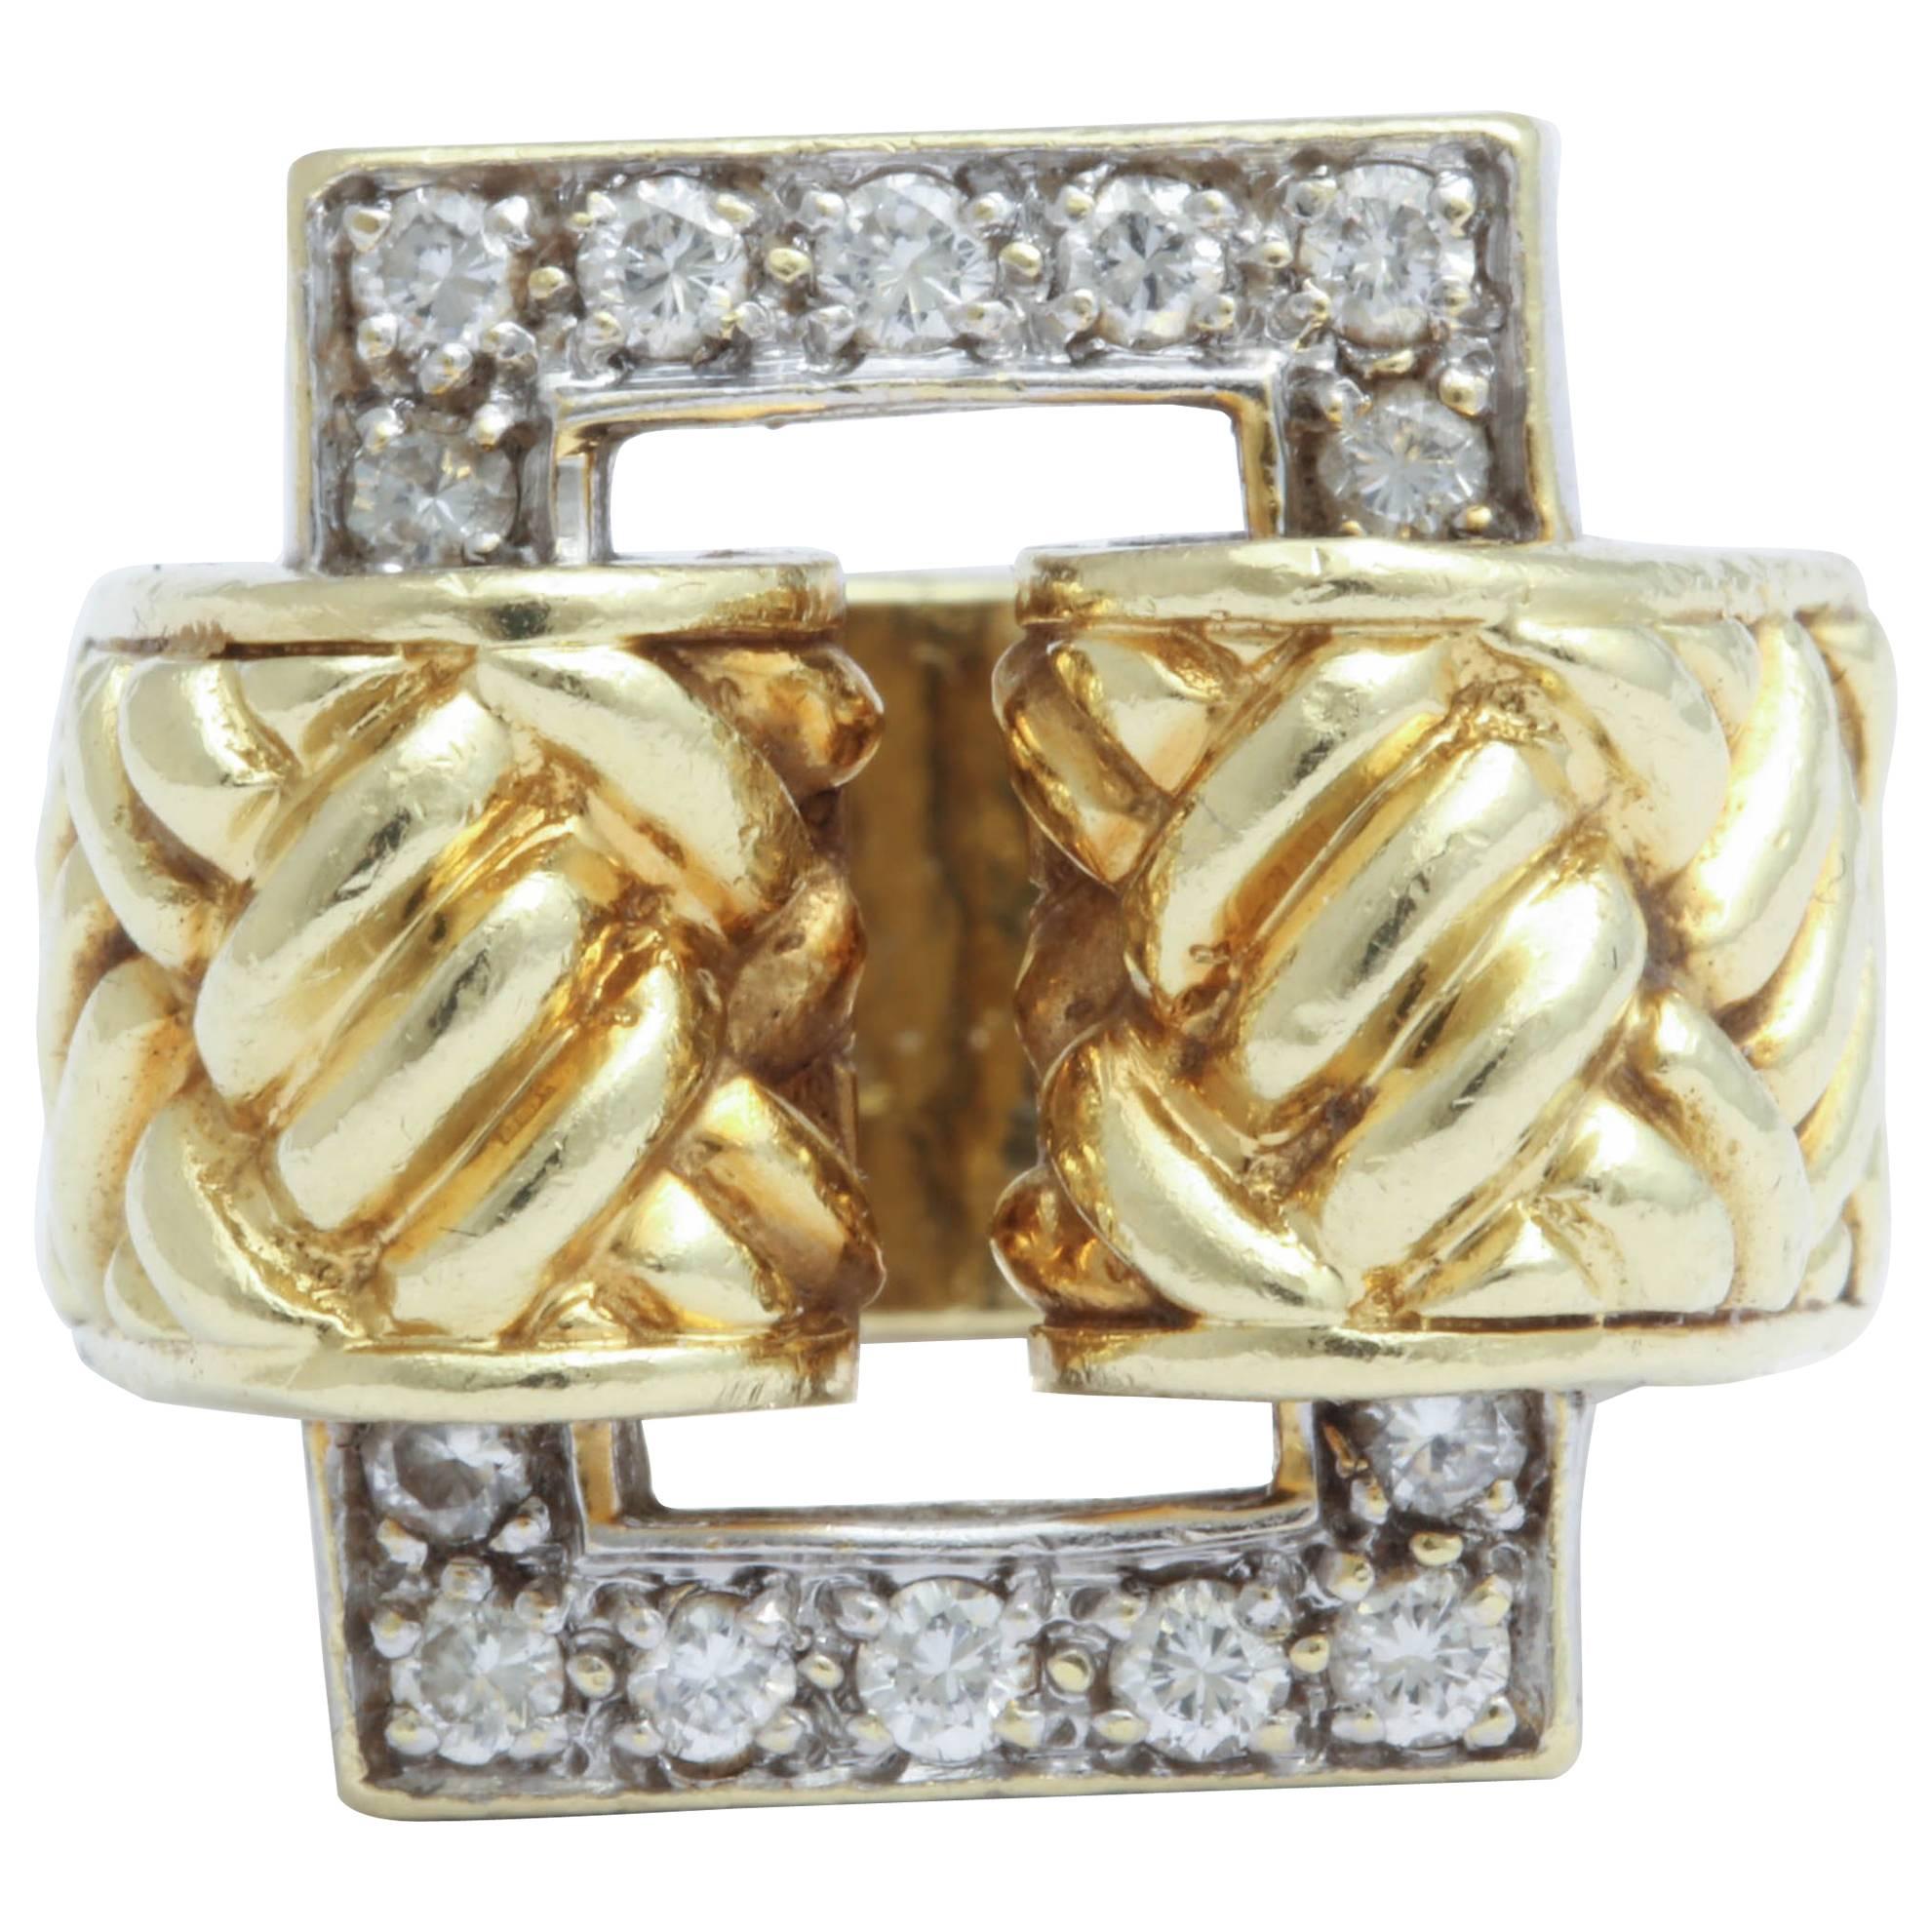 Tiffany & Co. Diamond Ring